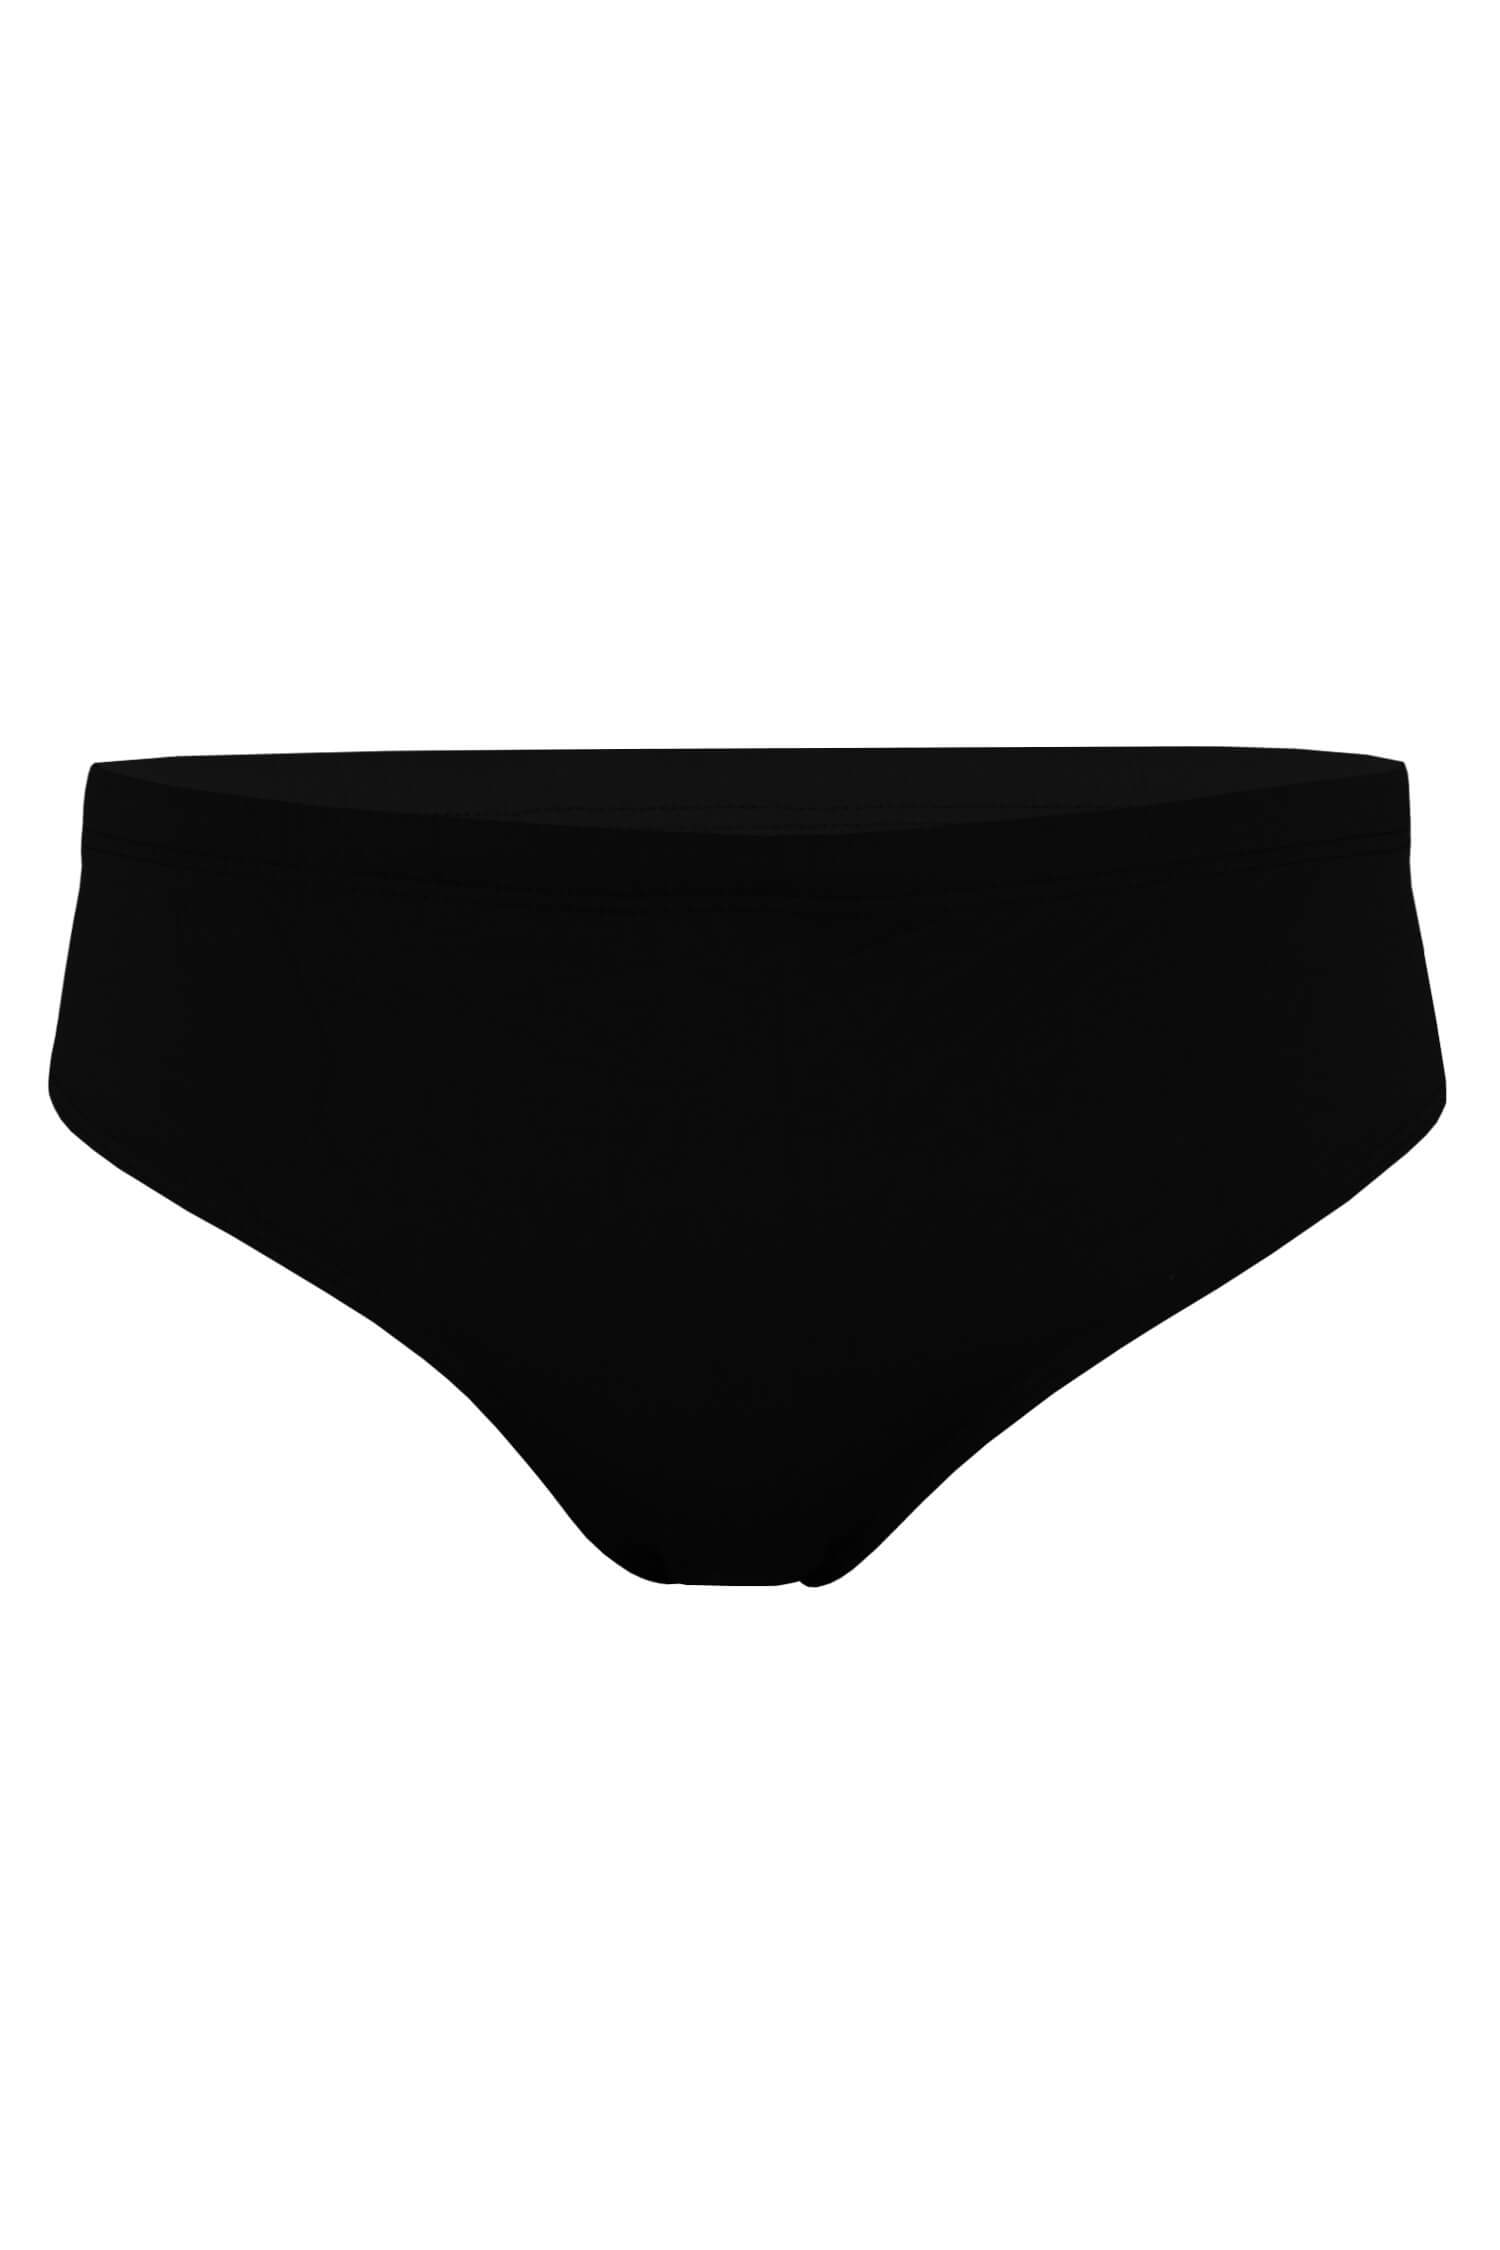 Raynas black pánské slipové plavky XL černá